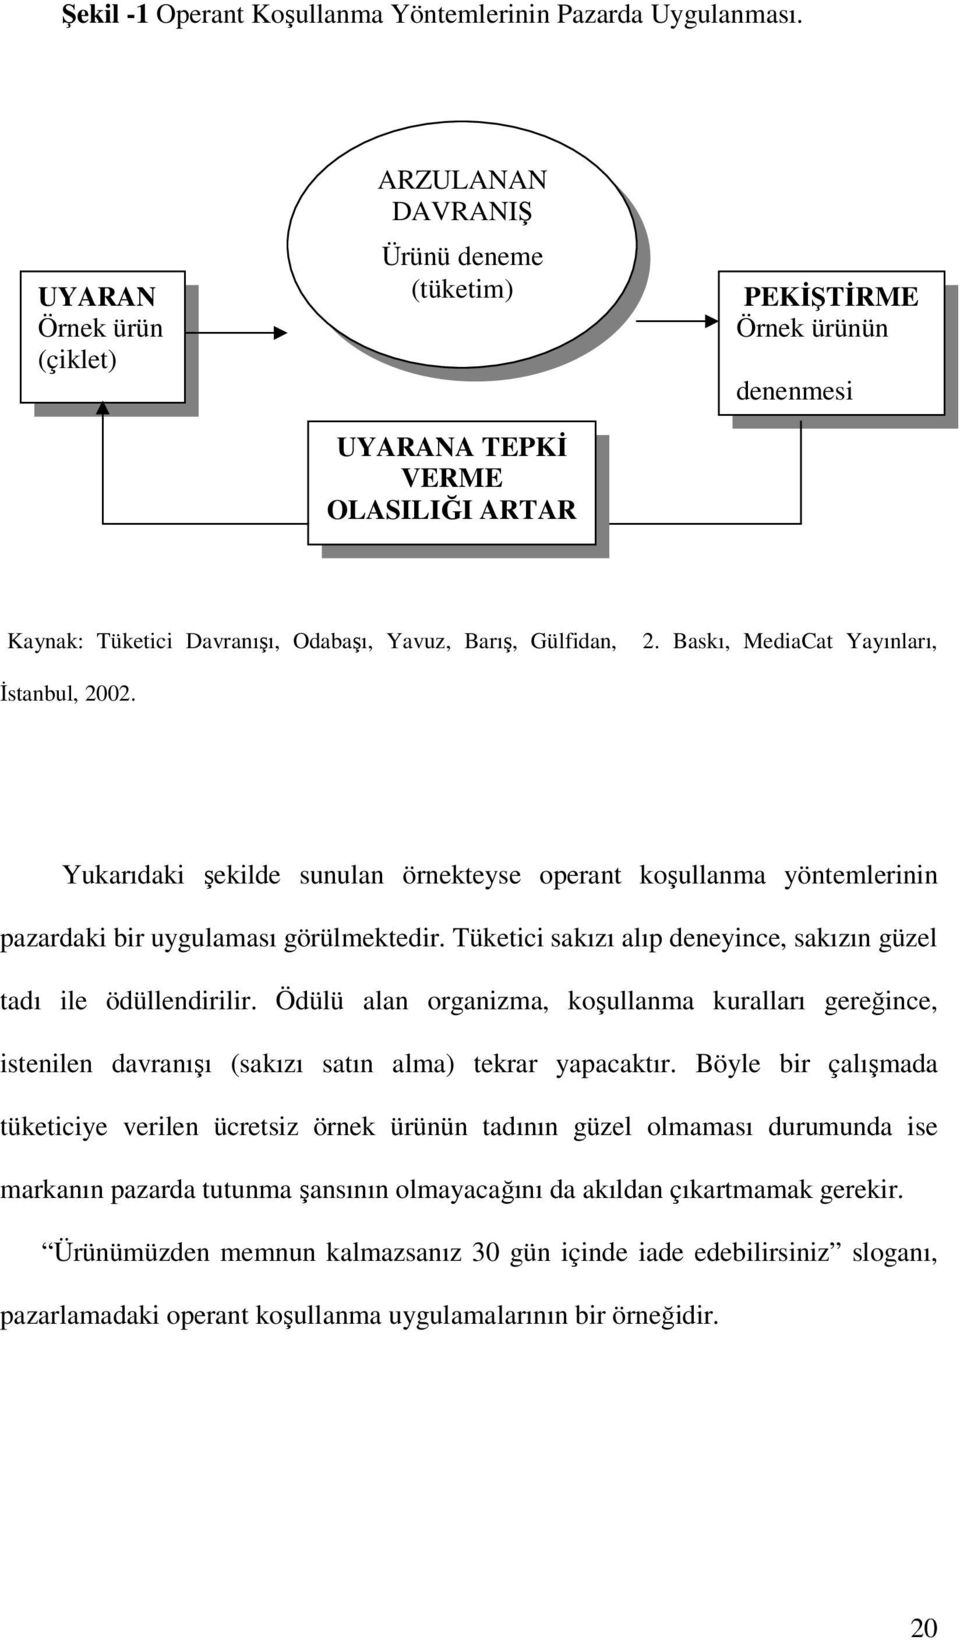 2. Baskı, MediaCat Yayınları, İstanbul, 2002. Yukarıdaki şekilde sunulan örnekteyse operant koşullanma yöntemlerinin pazardaki bir uygulaması görülmektedir.